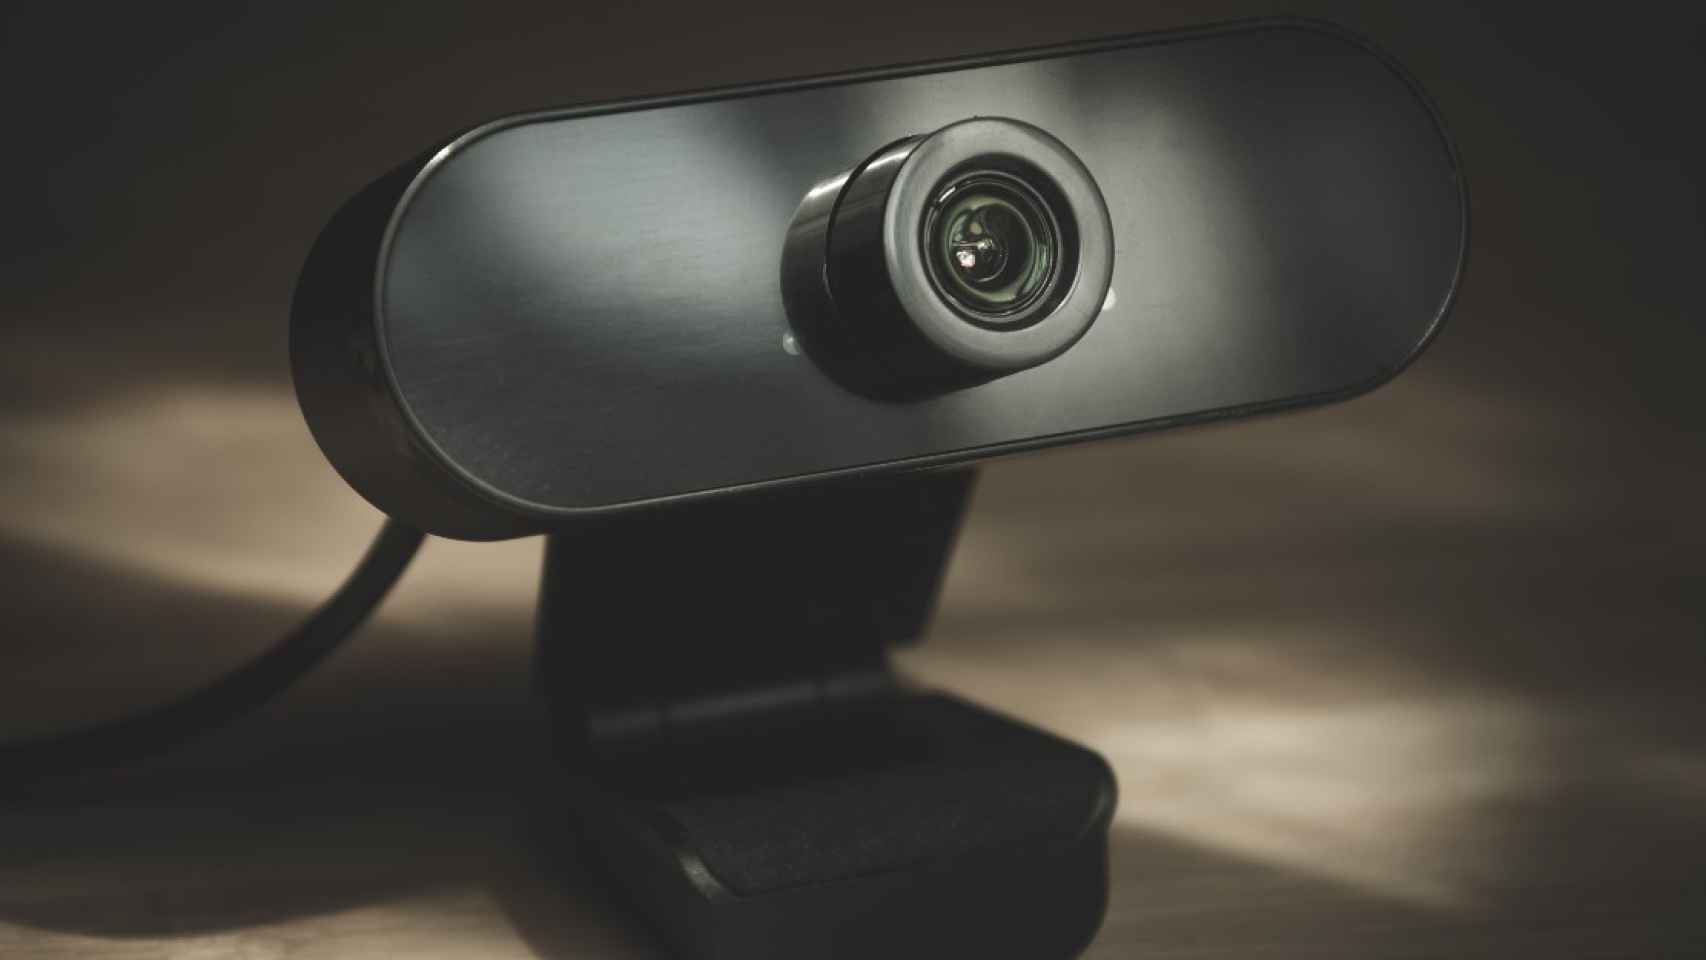 La webcam con descuento de Amazon / ARCHIVO